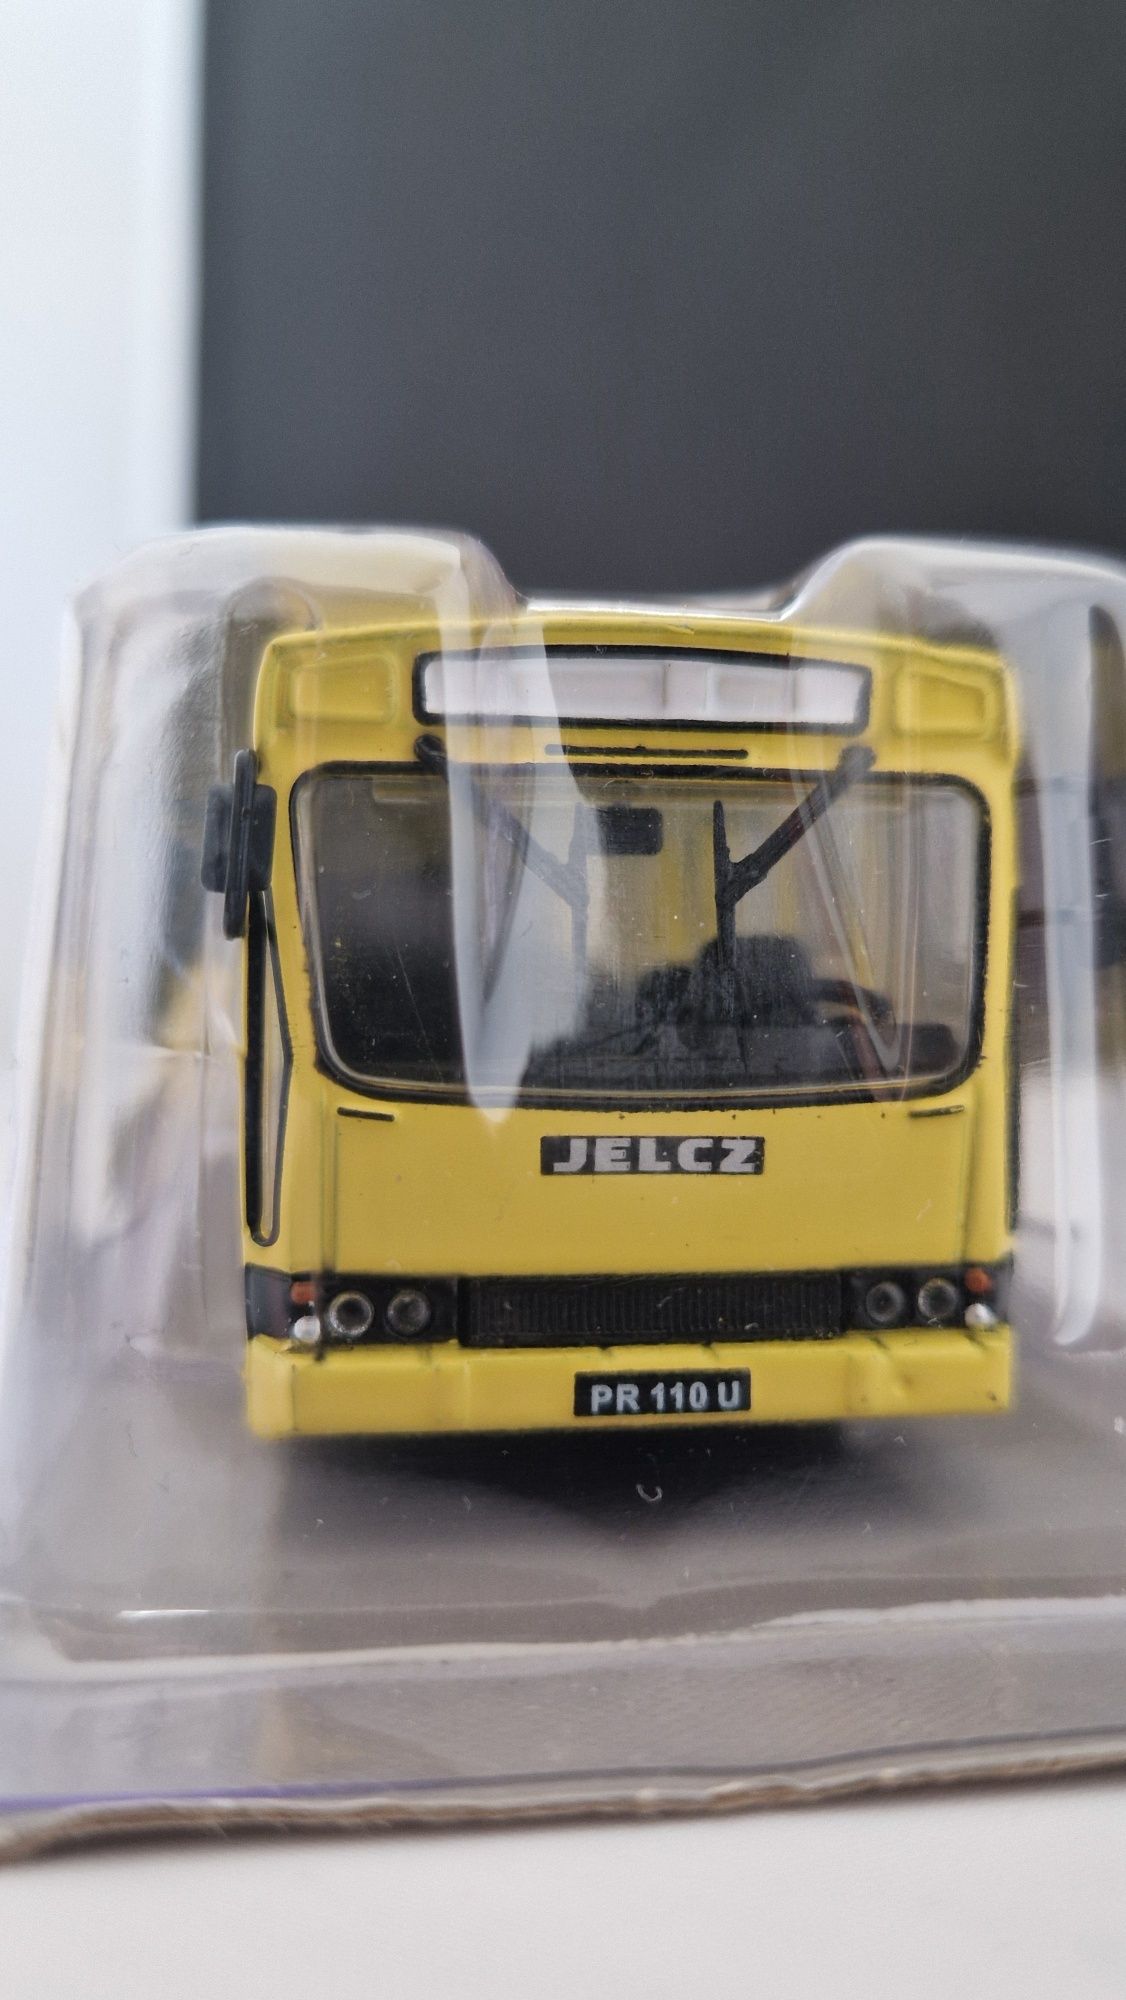 Model Jelcz-Berliet pr110u Kultowe Autobusy PRL skala 1:72 deagostini